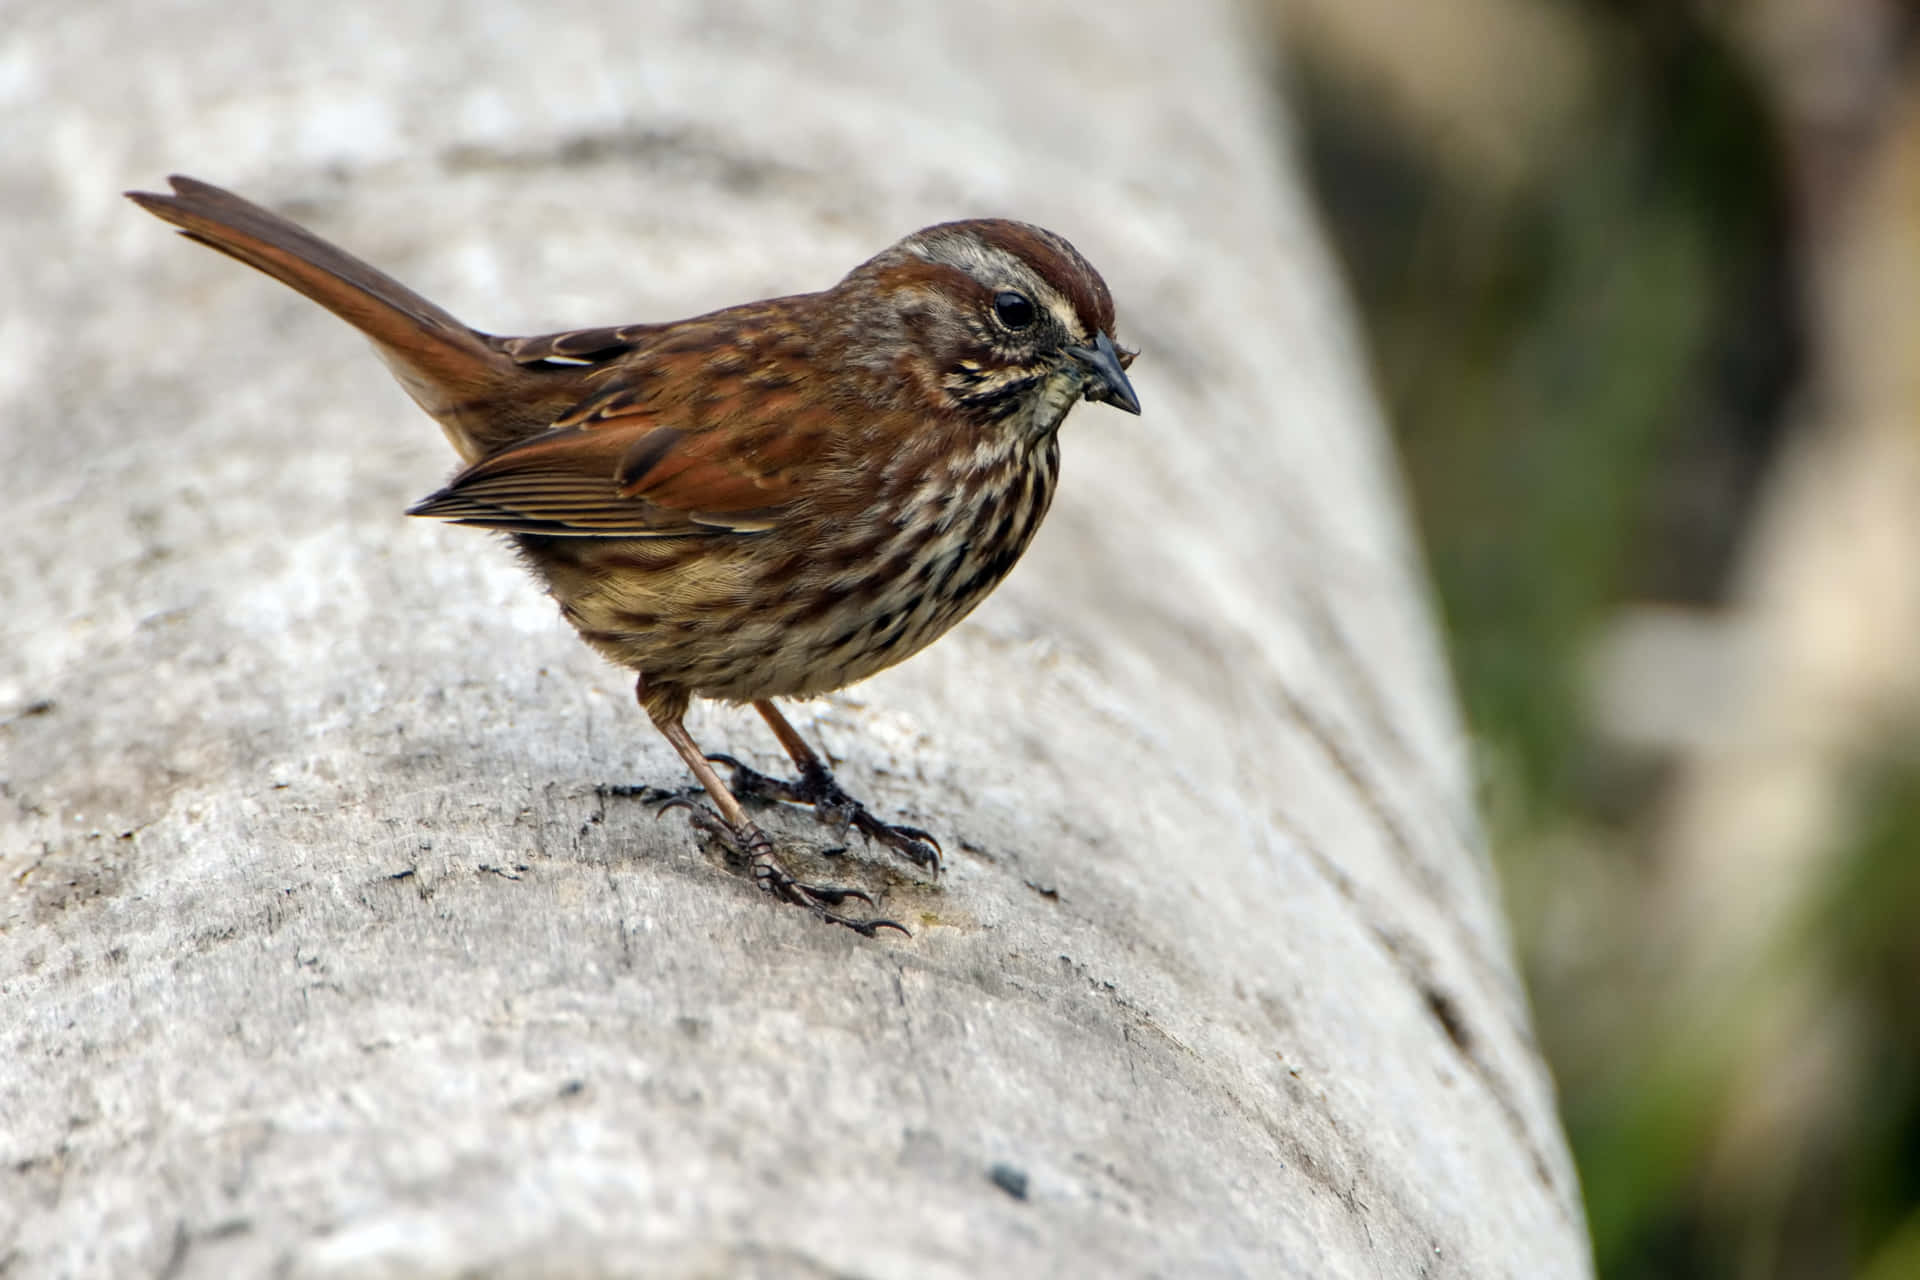 A Brown Bird Standing On A Wooden Log